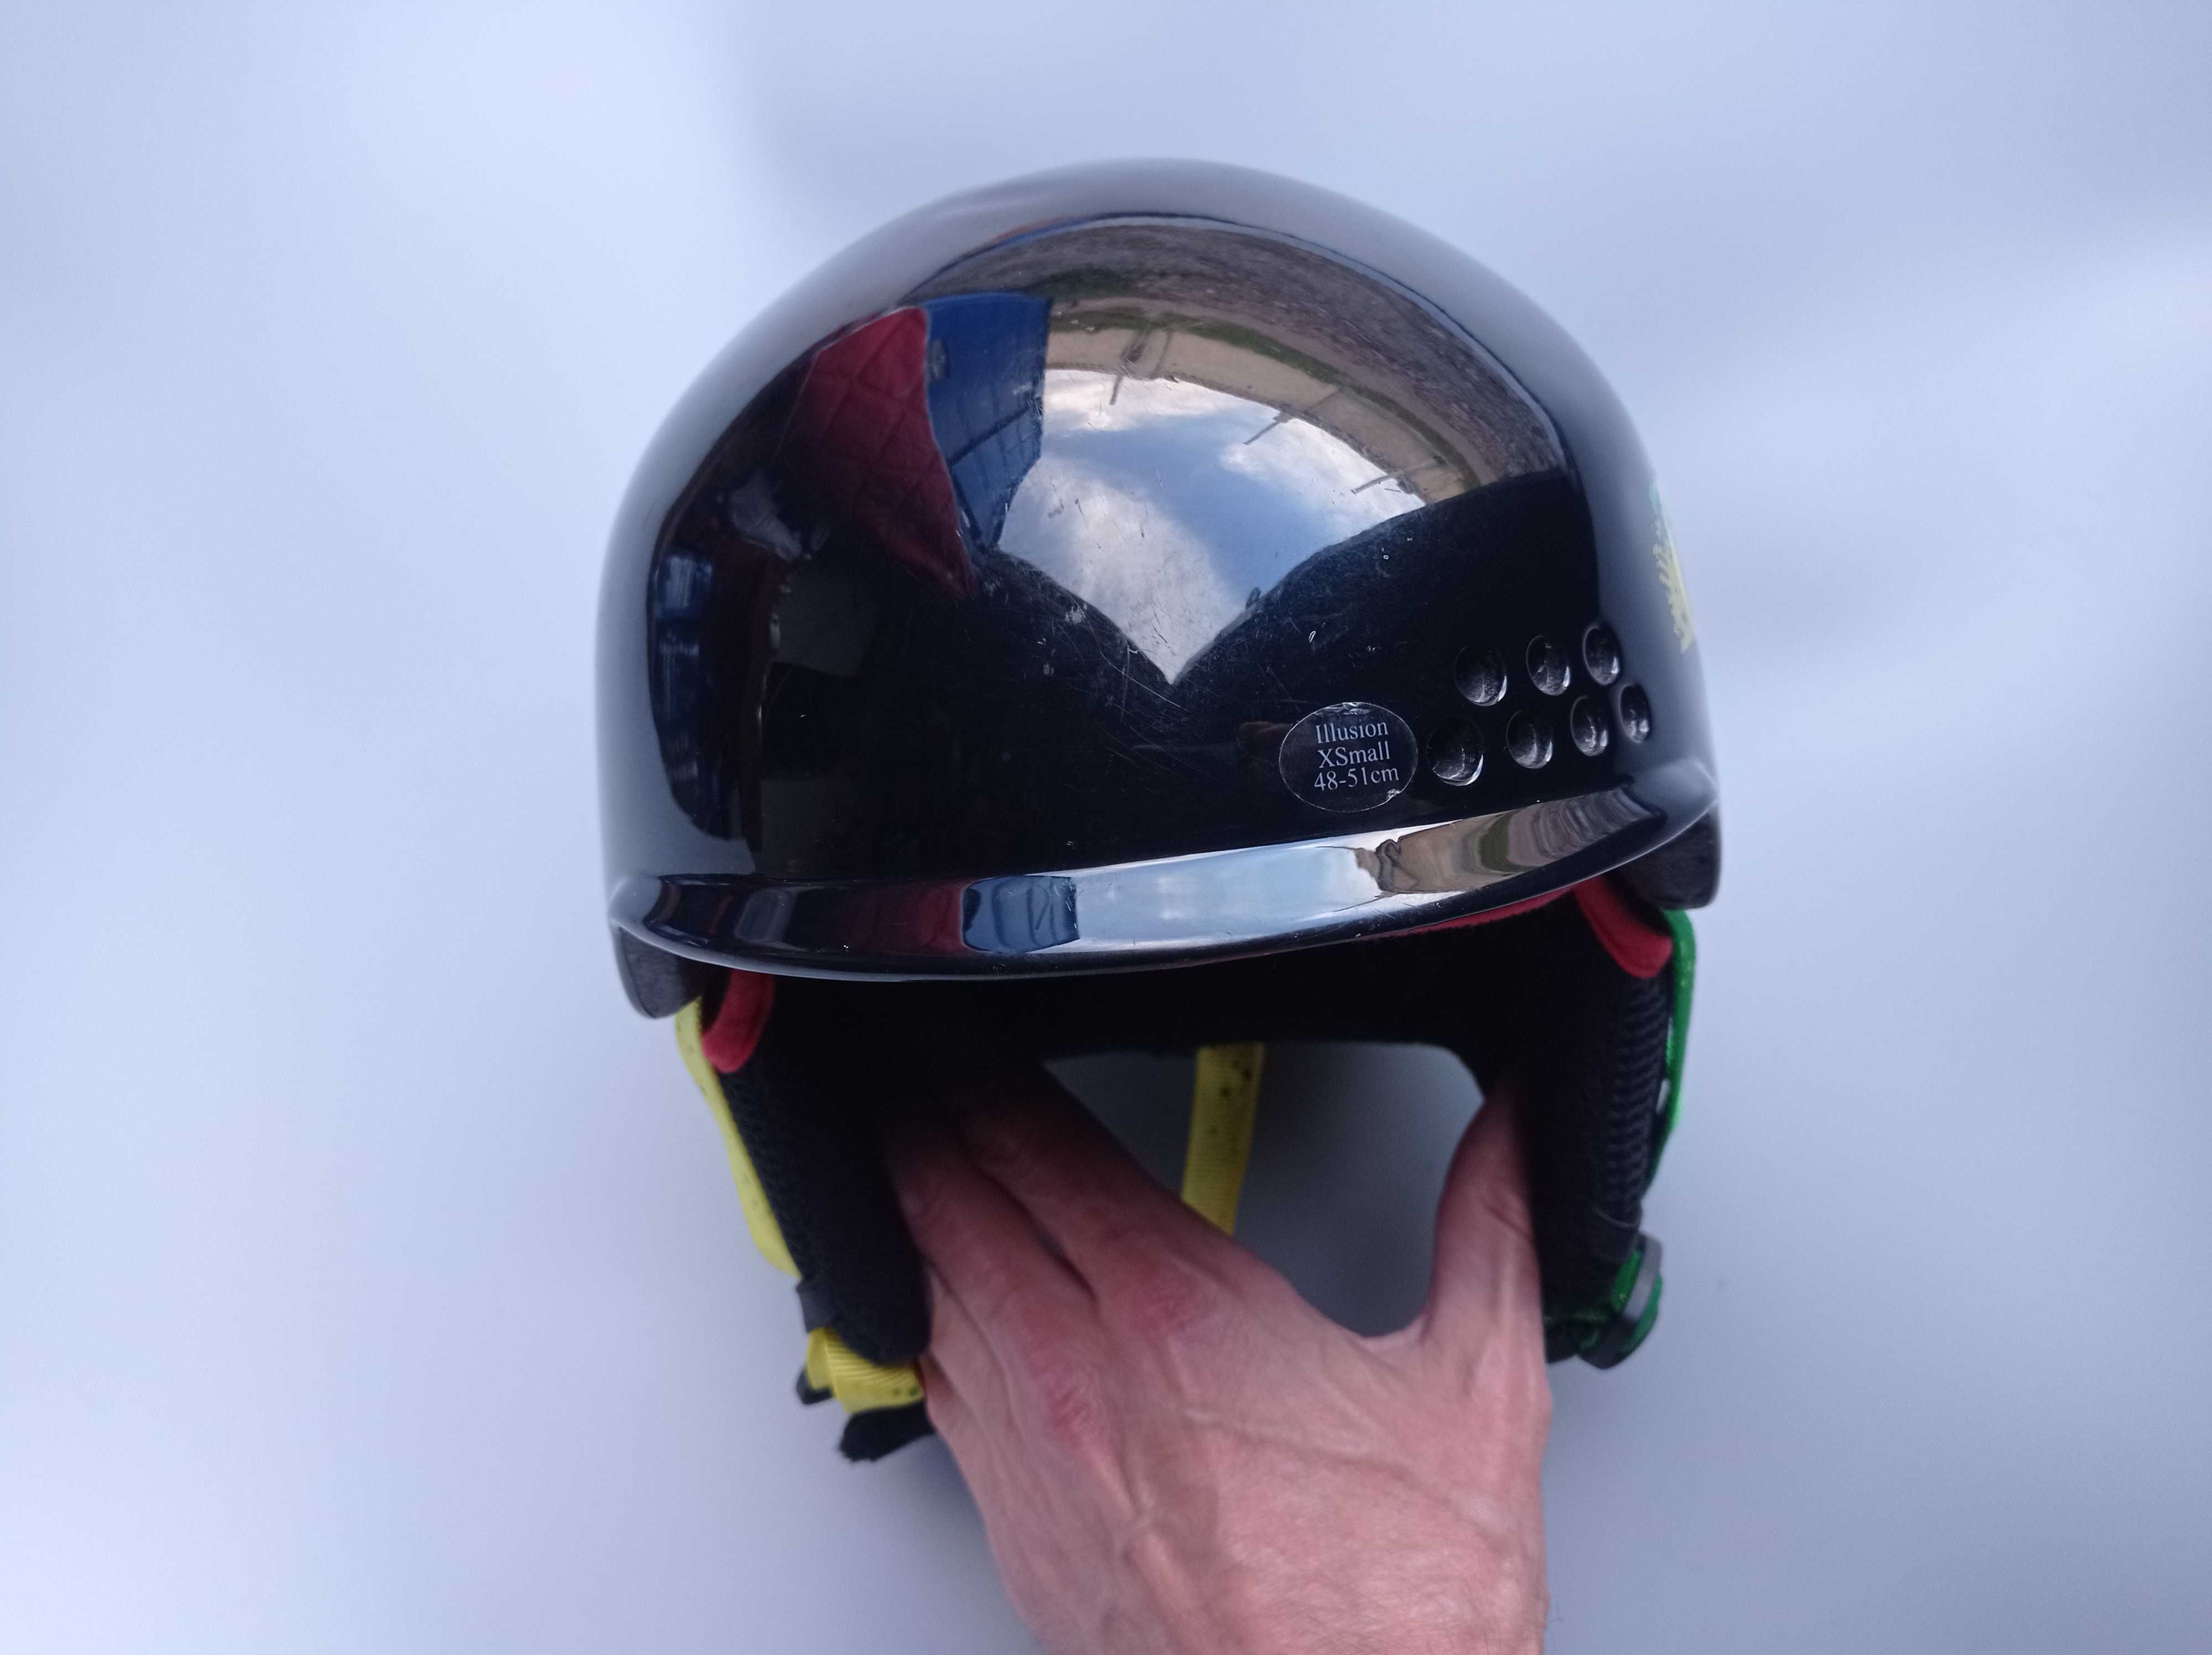 Горнолыжный детский шлем K2 ILLUSION, размер 48-51см, Германия.